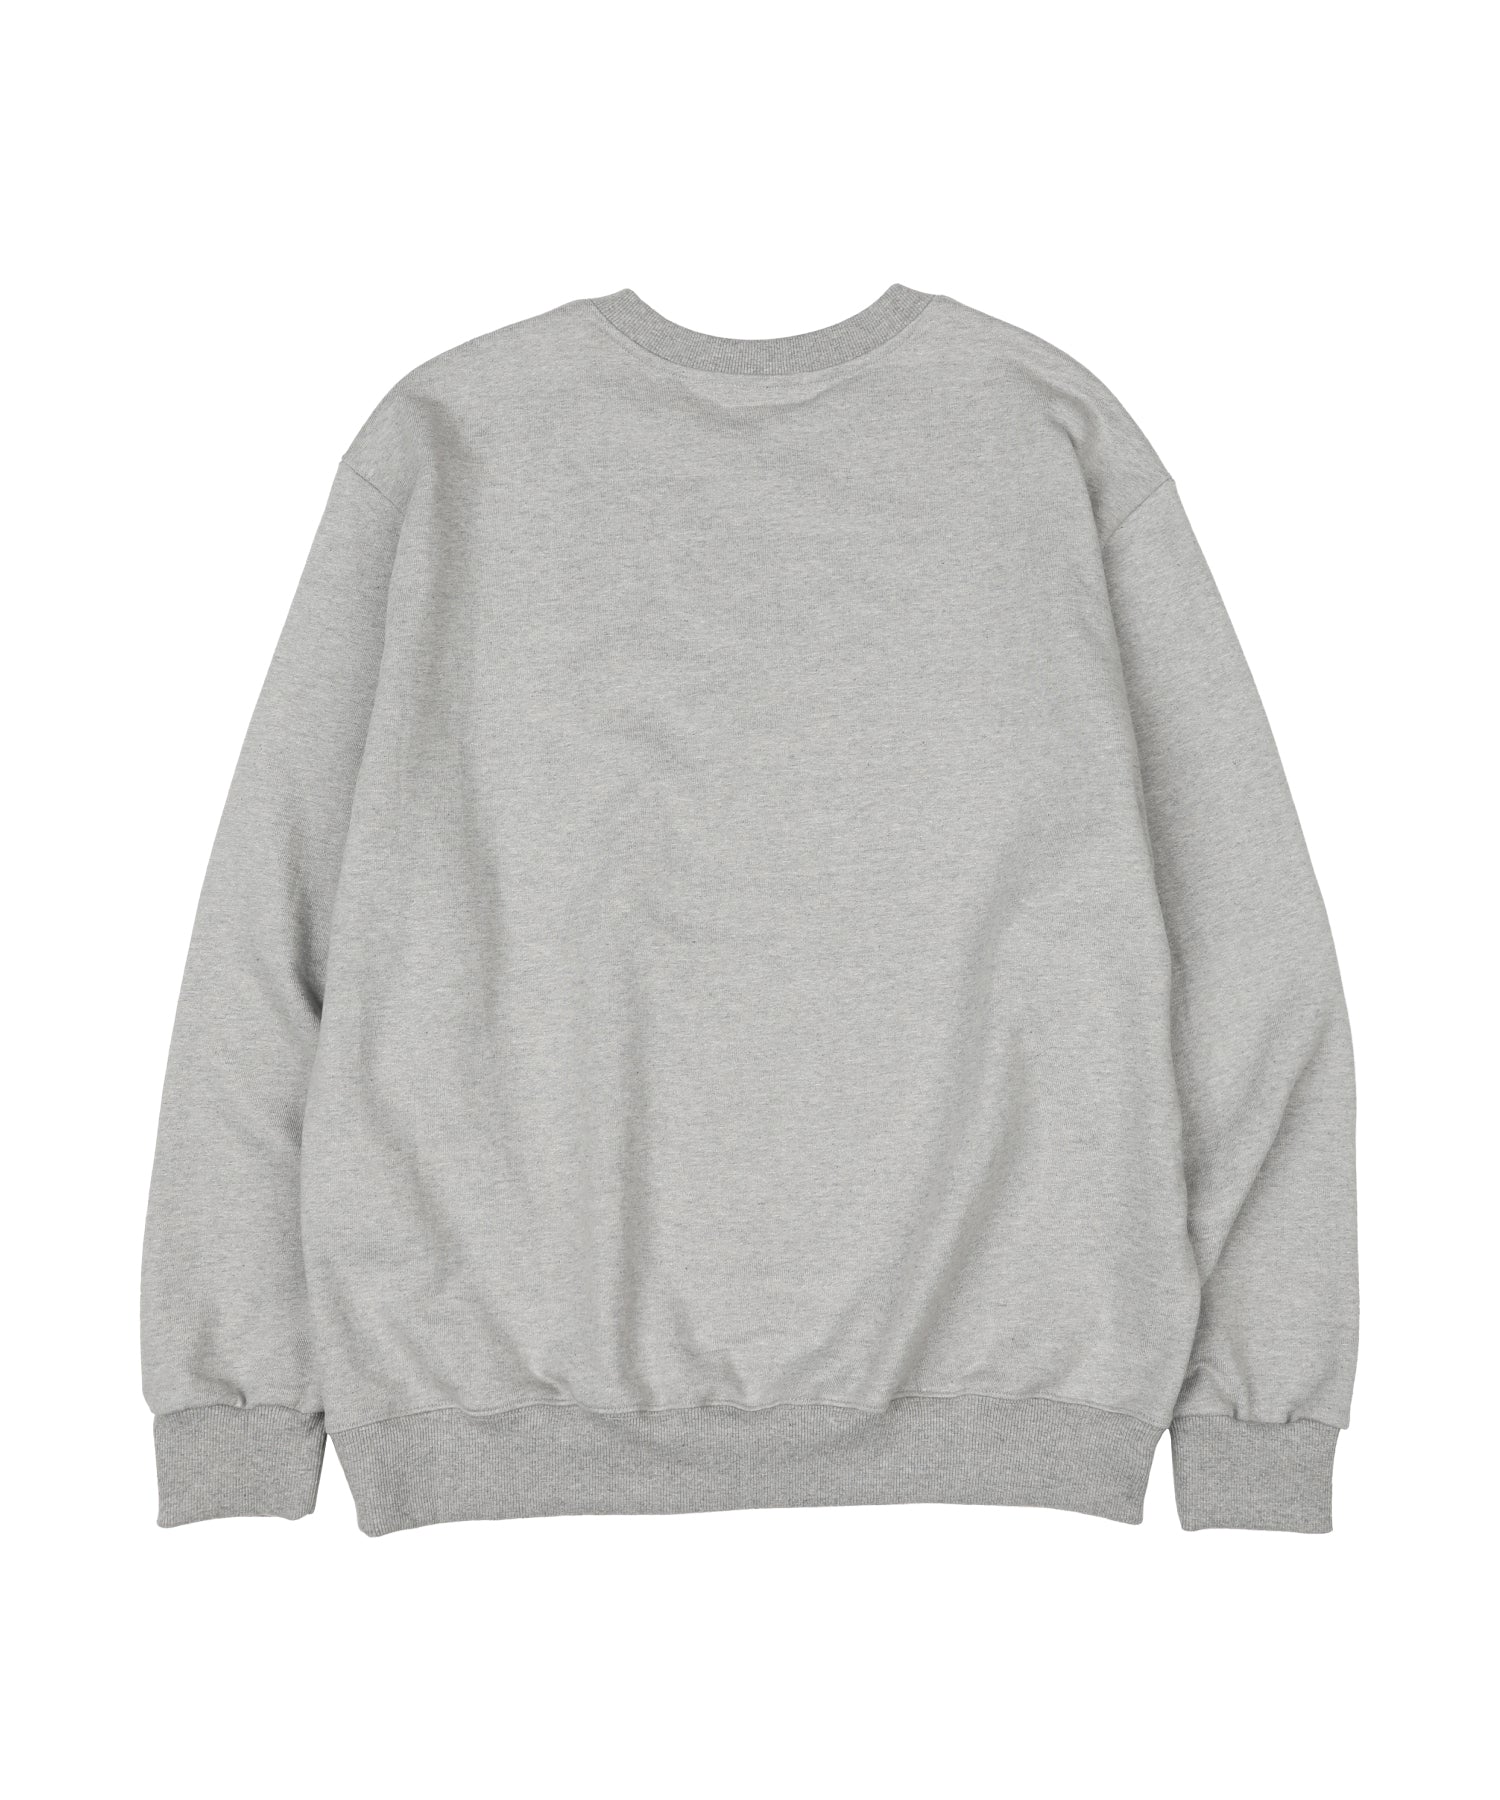 Groovin Sweatshirt - Melange Grey